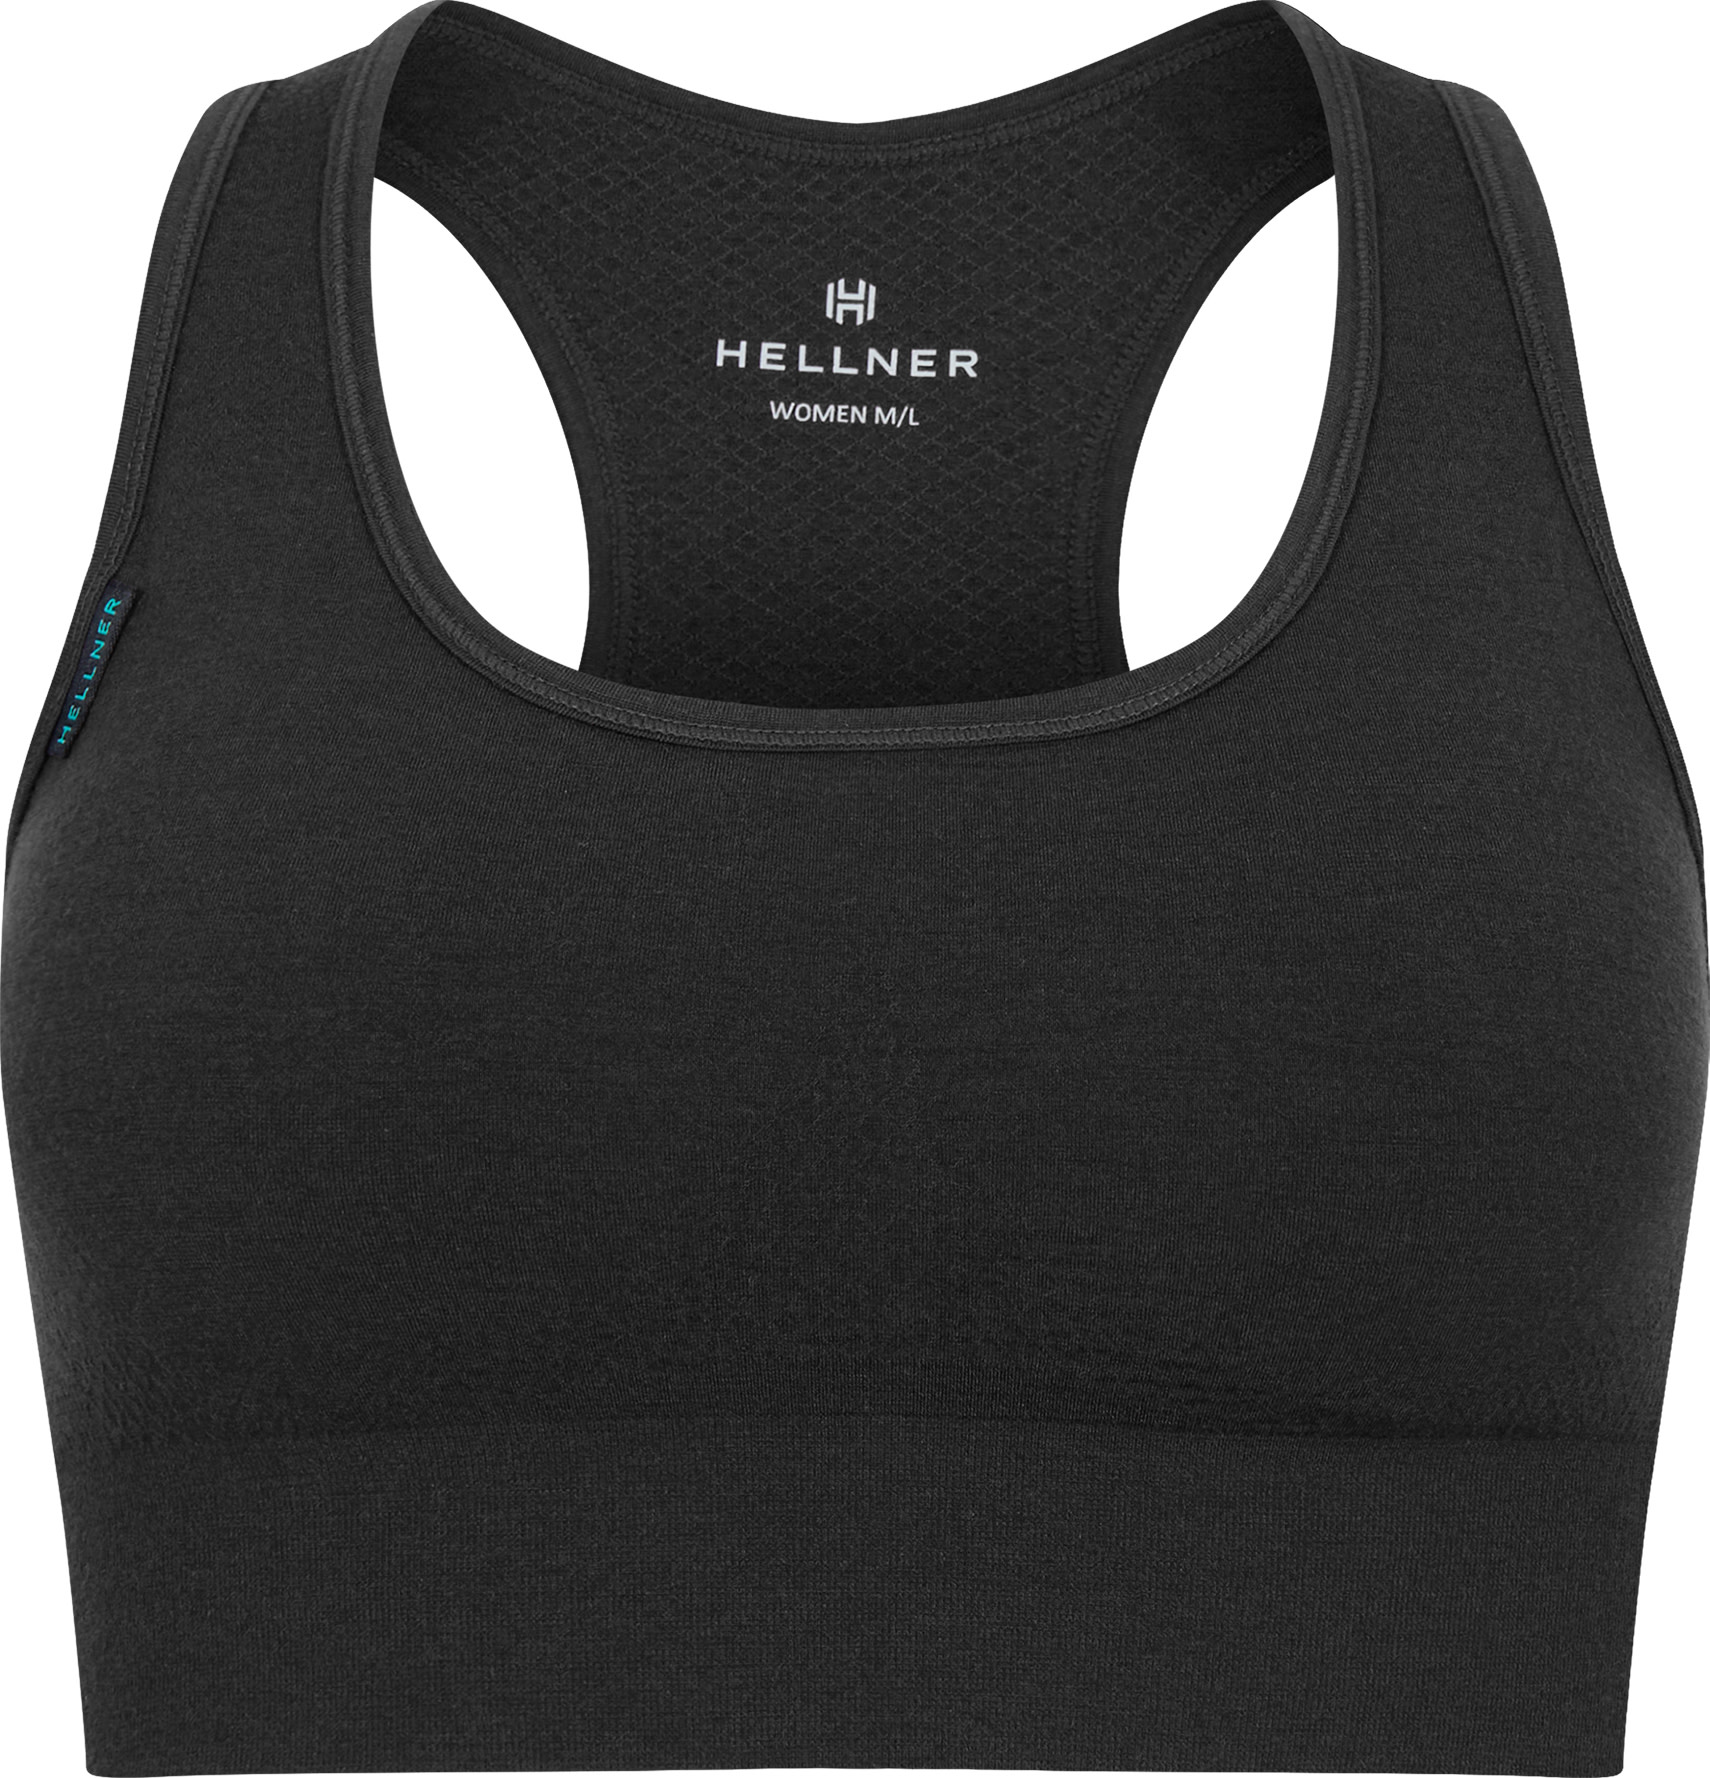 Hellner Women's Merino Wool Seamless Bra Black Beauty XL, Black Beauty